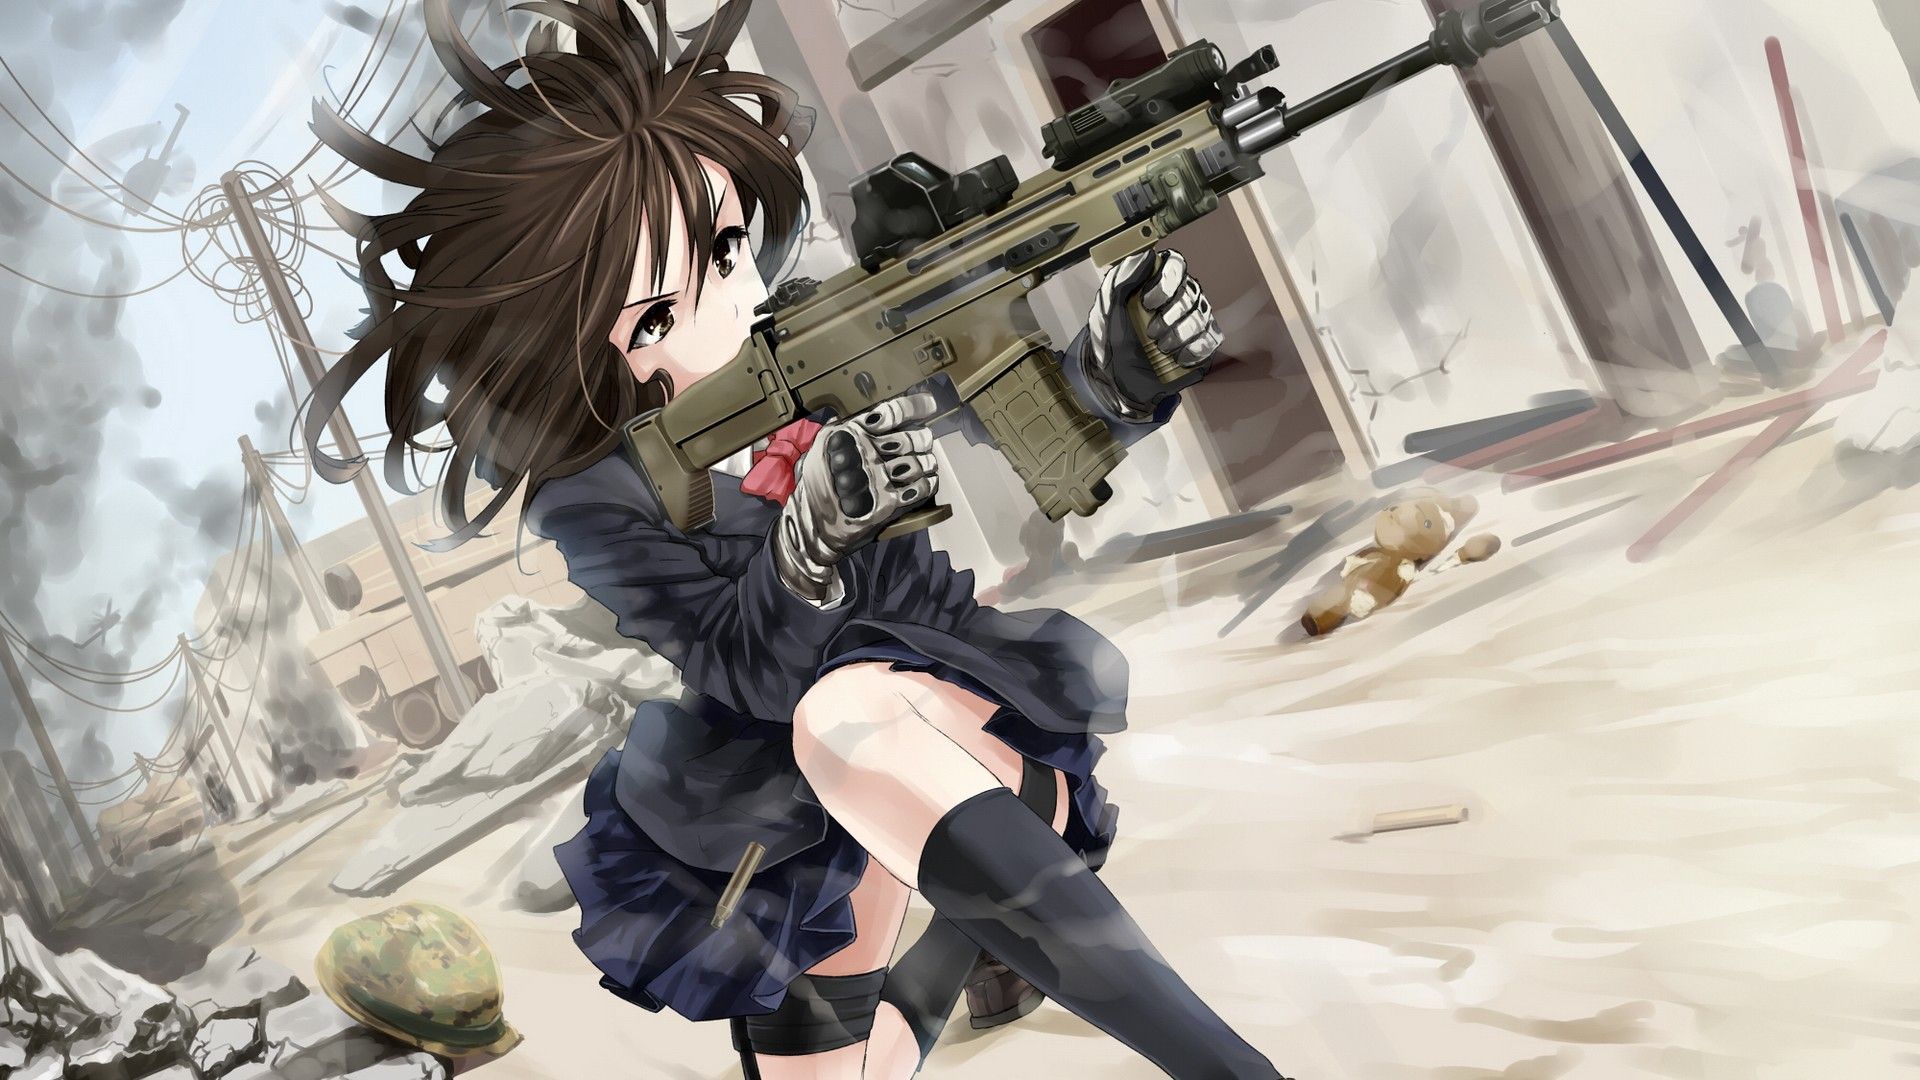 anime girl with guns wallpaper for dekstop. Anime warrior girl